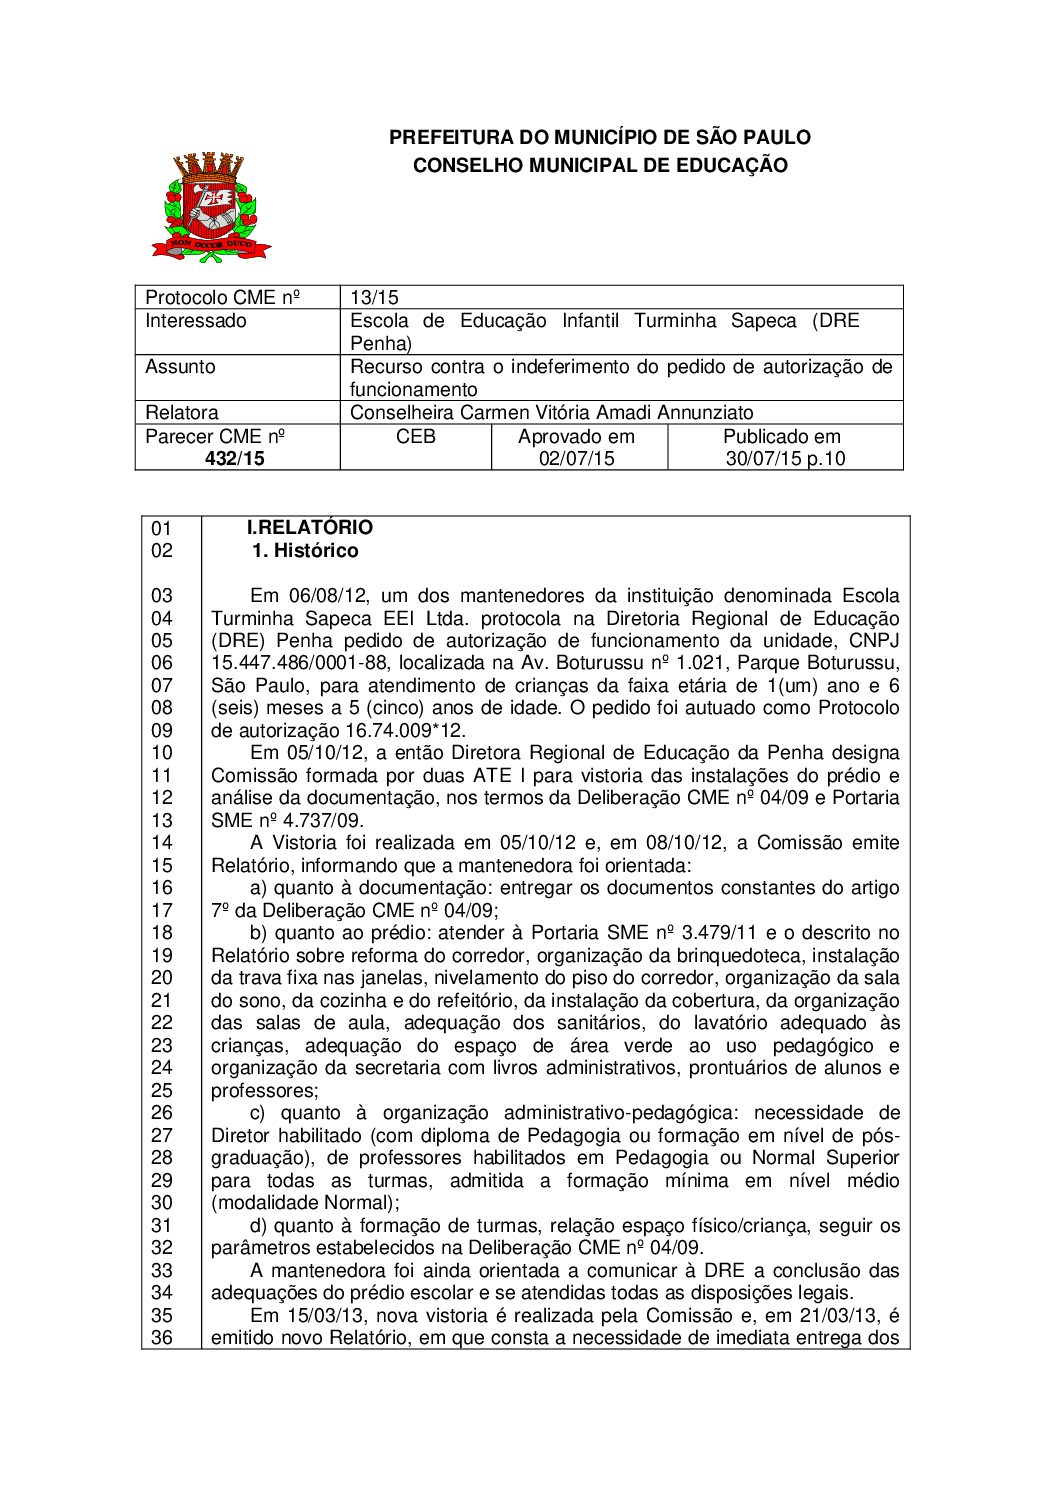 Parecer CME nº 432/2015 - Escola de Educação Infantil Turminha Sapeca (DRE Penha) - Recurso contra o indeferimento do pedido de autorização de funcionamento 